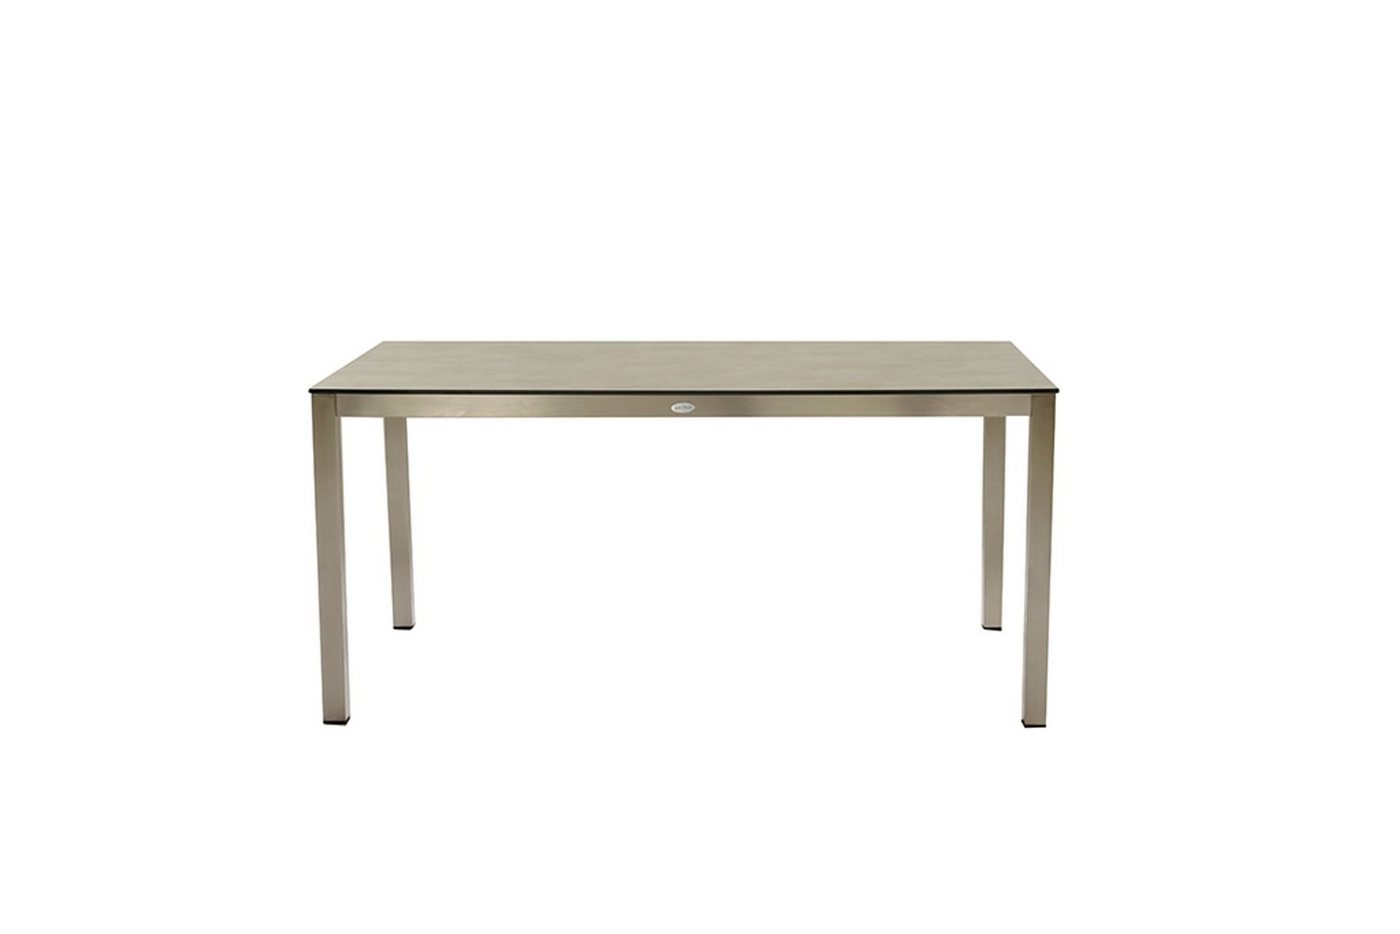 Gravidus Gartentisch Edelstahl Tisch Gartentisch Esstisch Silber 158x90cm von Gravidus